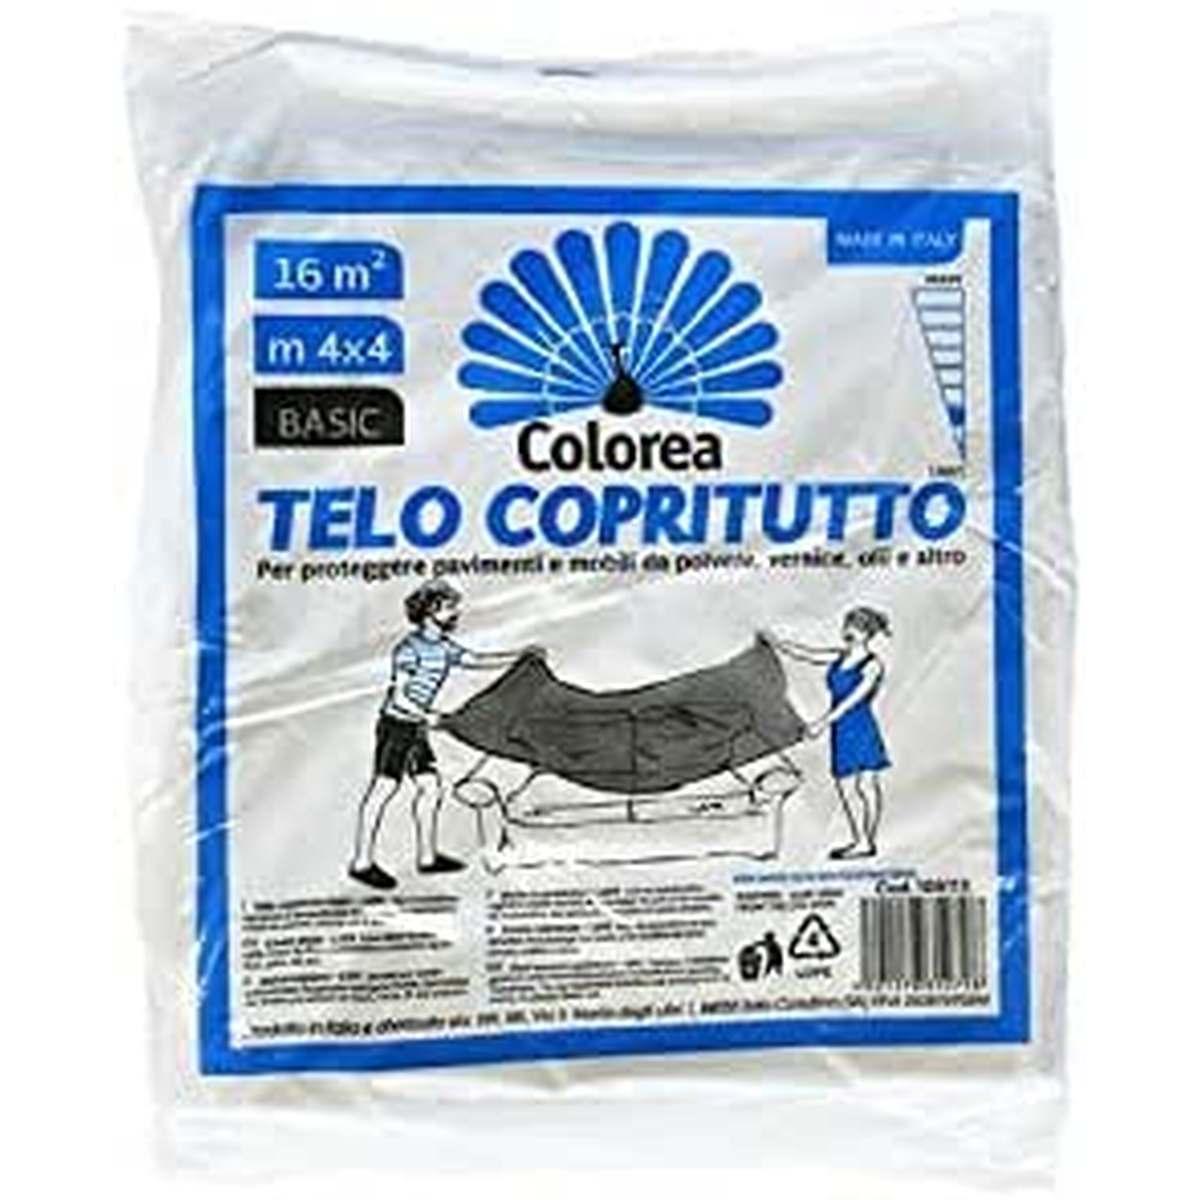 Colorea Telo copritutto mt.4x4 in polietilene gr.200 basic